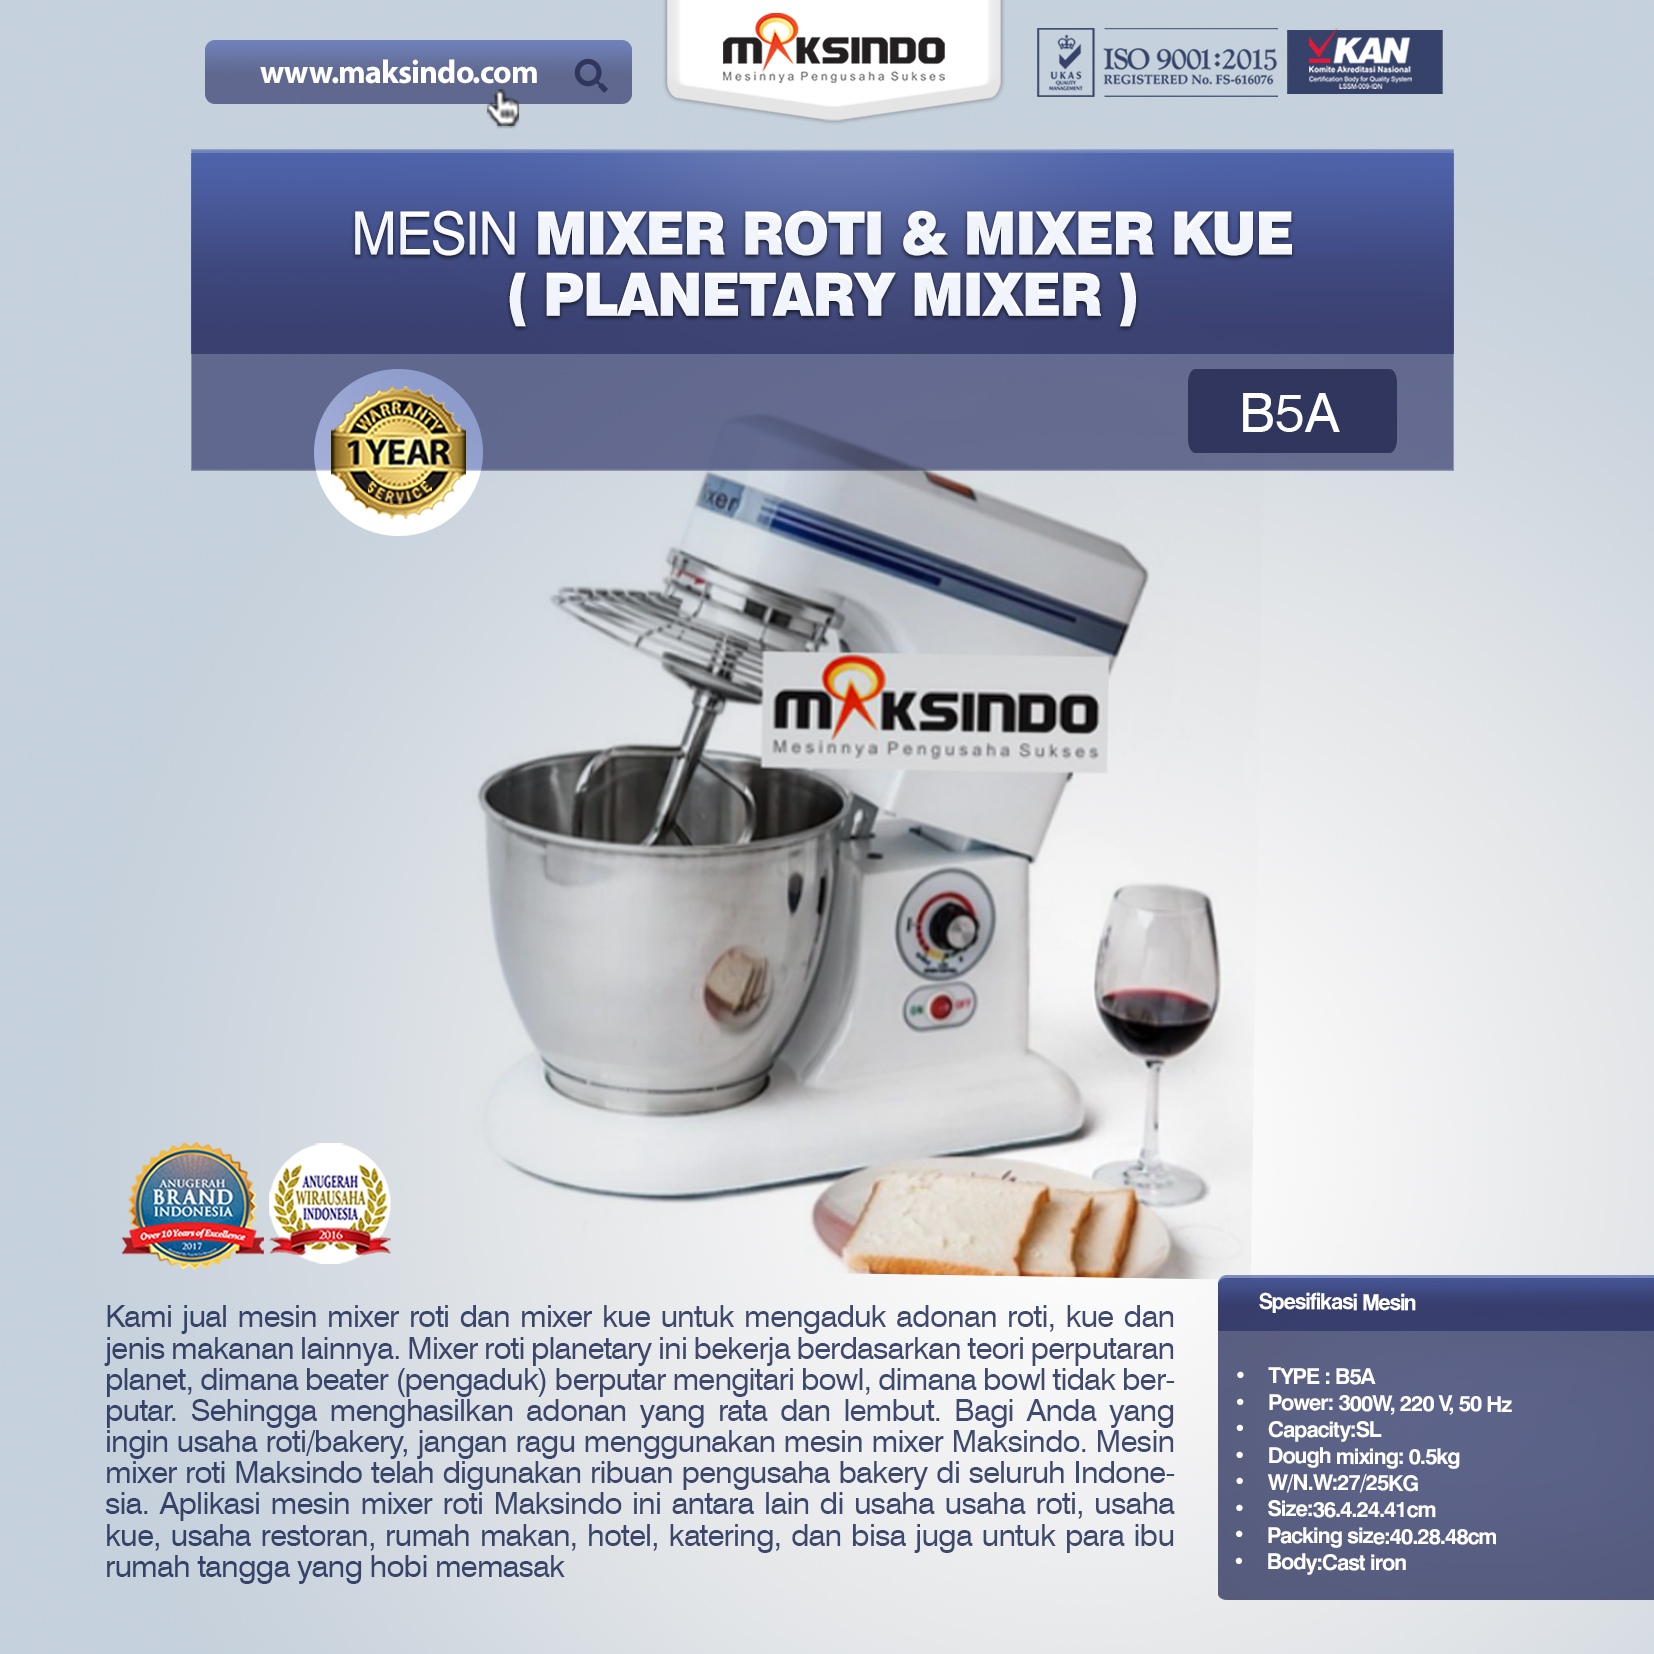 Jual Mesin Mixer Roti dan Kue Model Planetary di Bandung